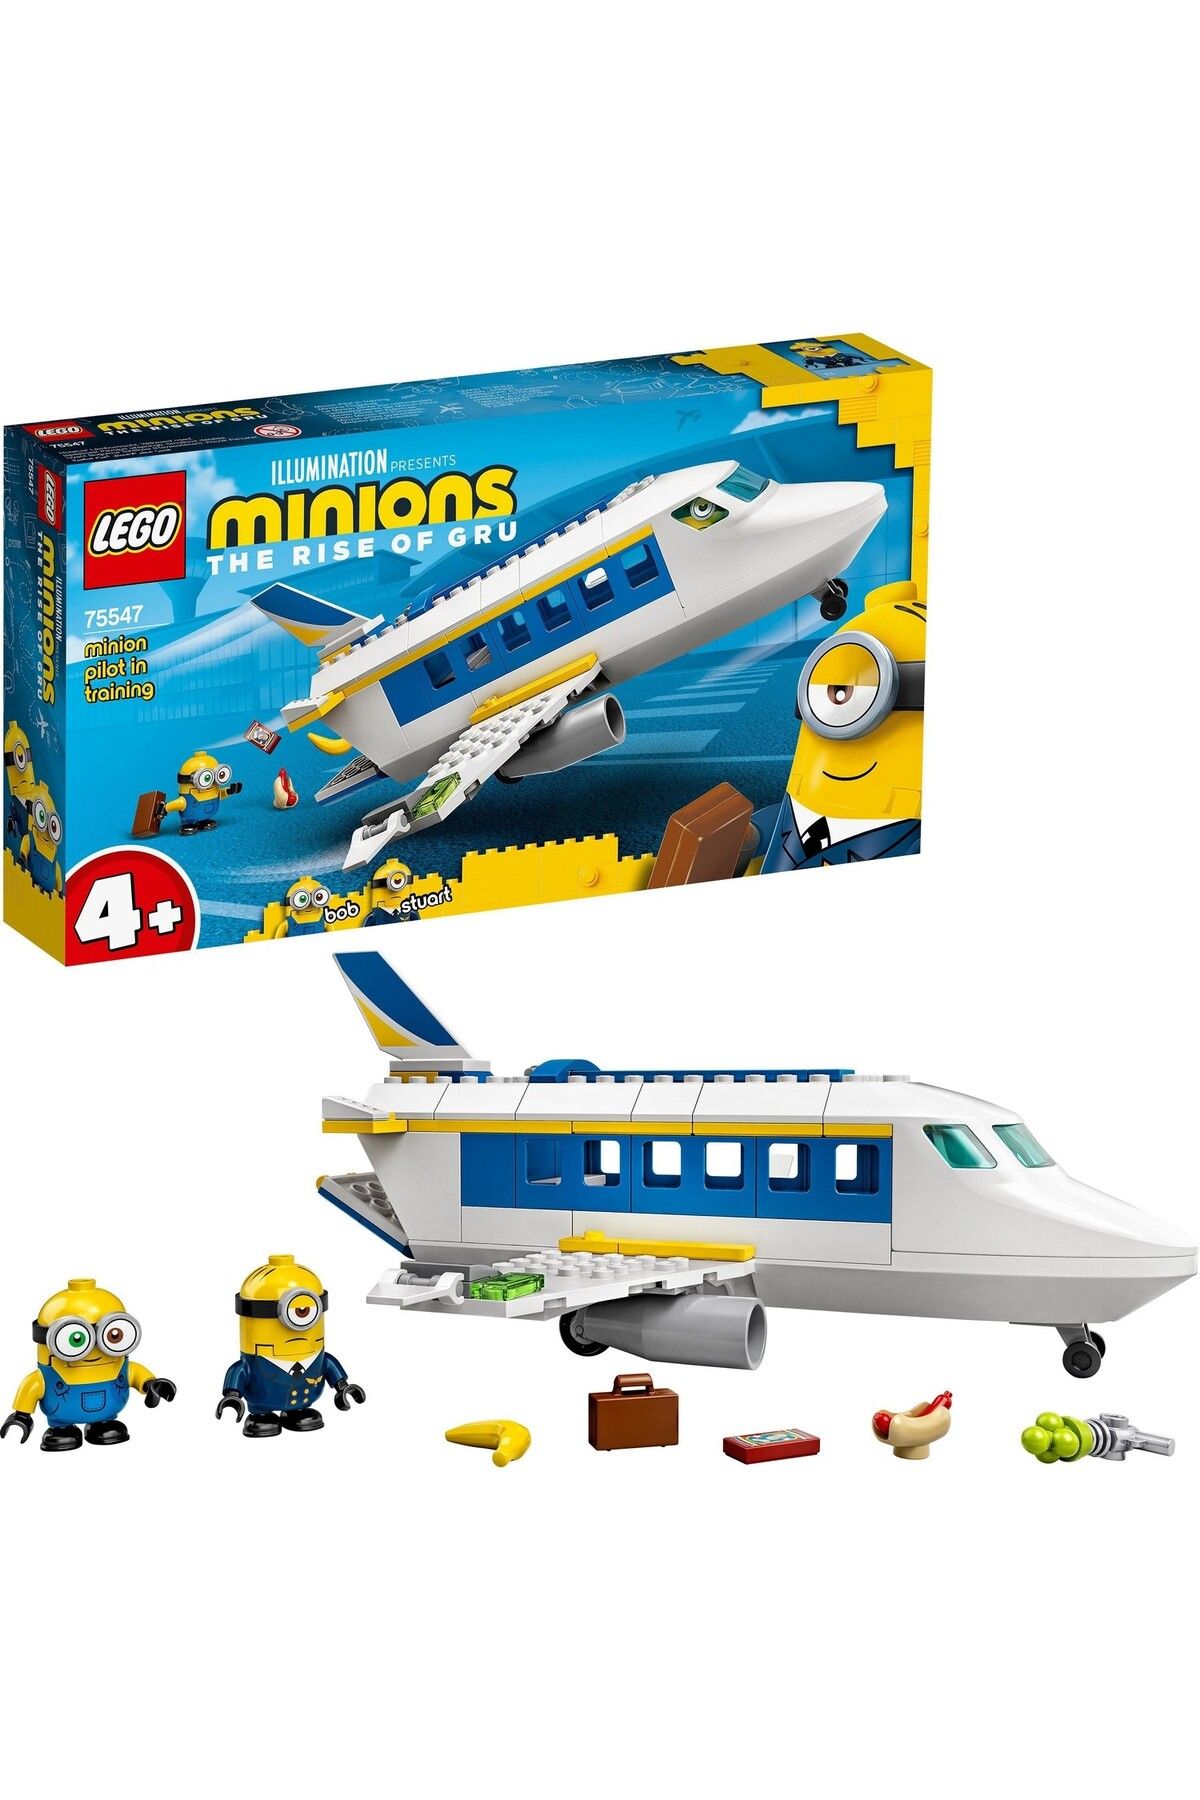 sommeow ® Minions Minyon Pilot Eğitimde 75547 - Yaratıcı Çocuklar Için Oyuncak Yapım Seti (119 Parça)